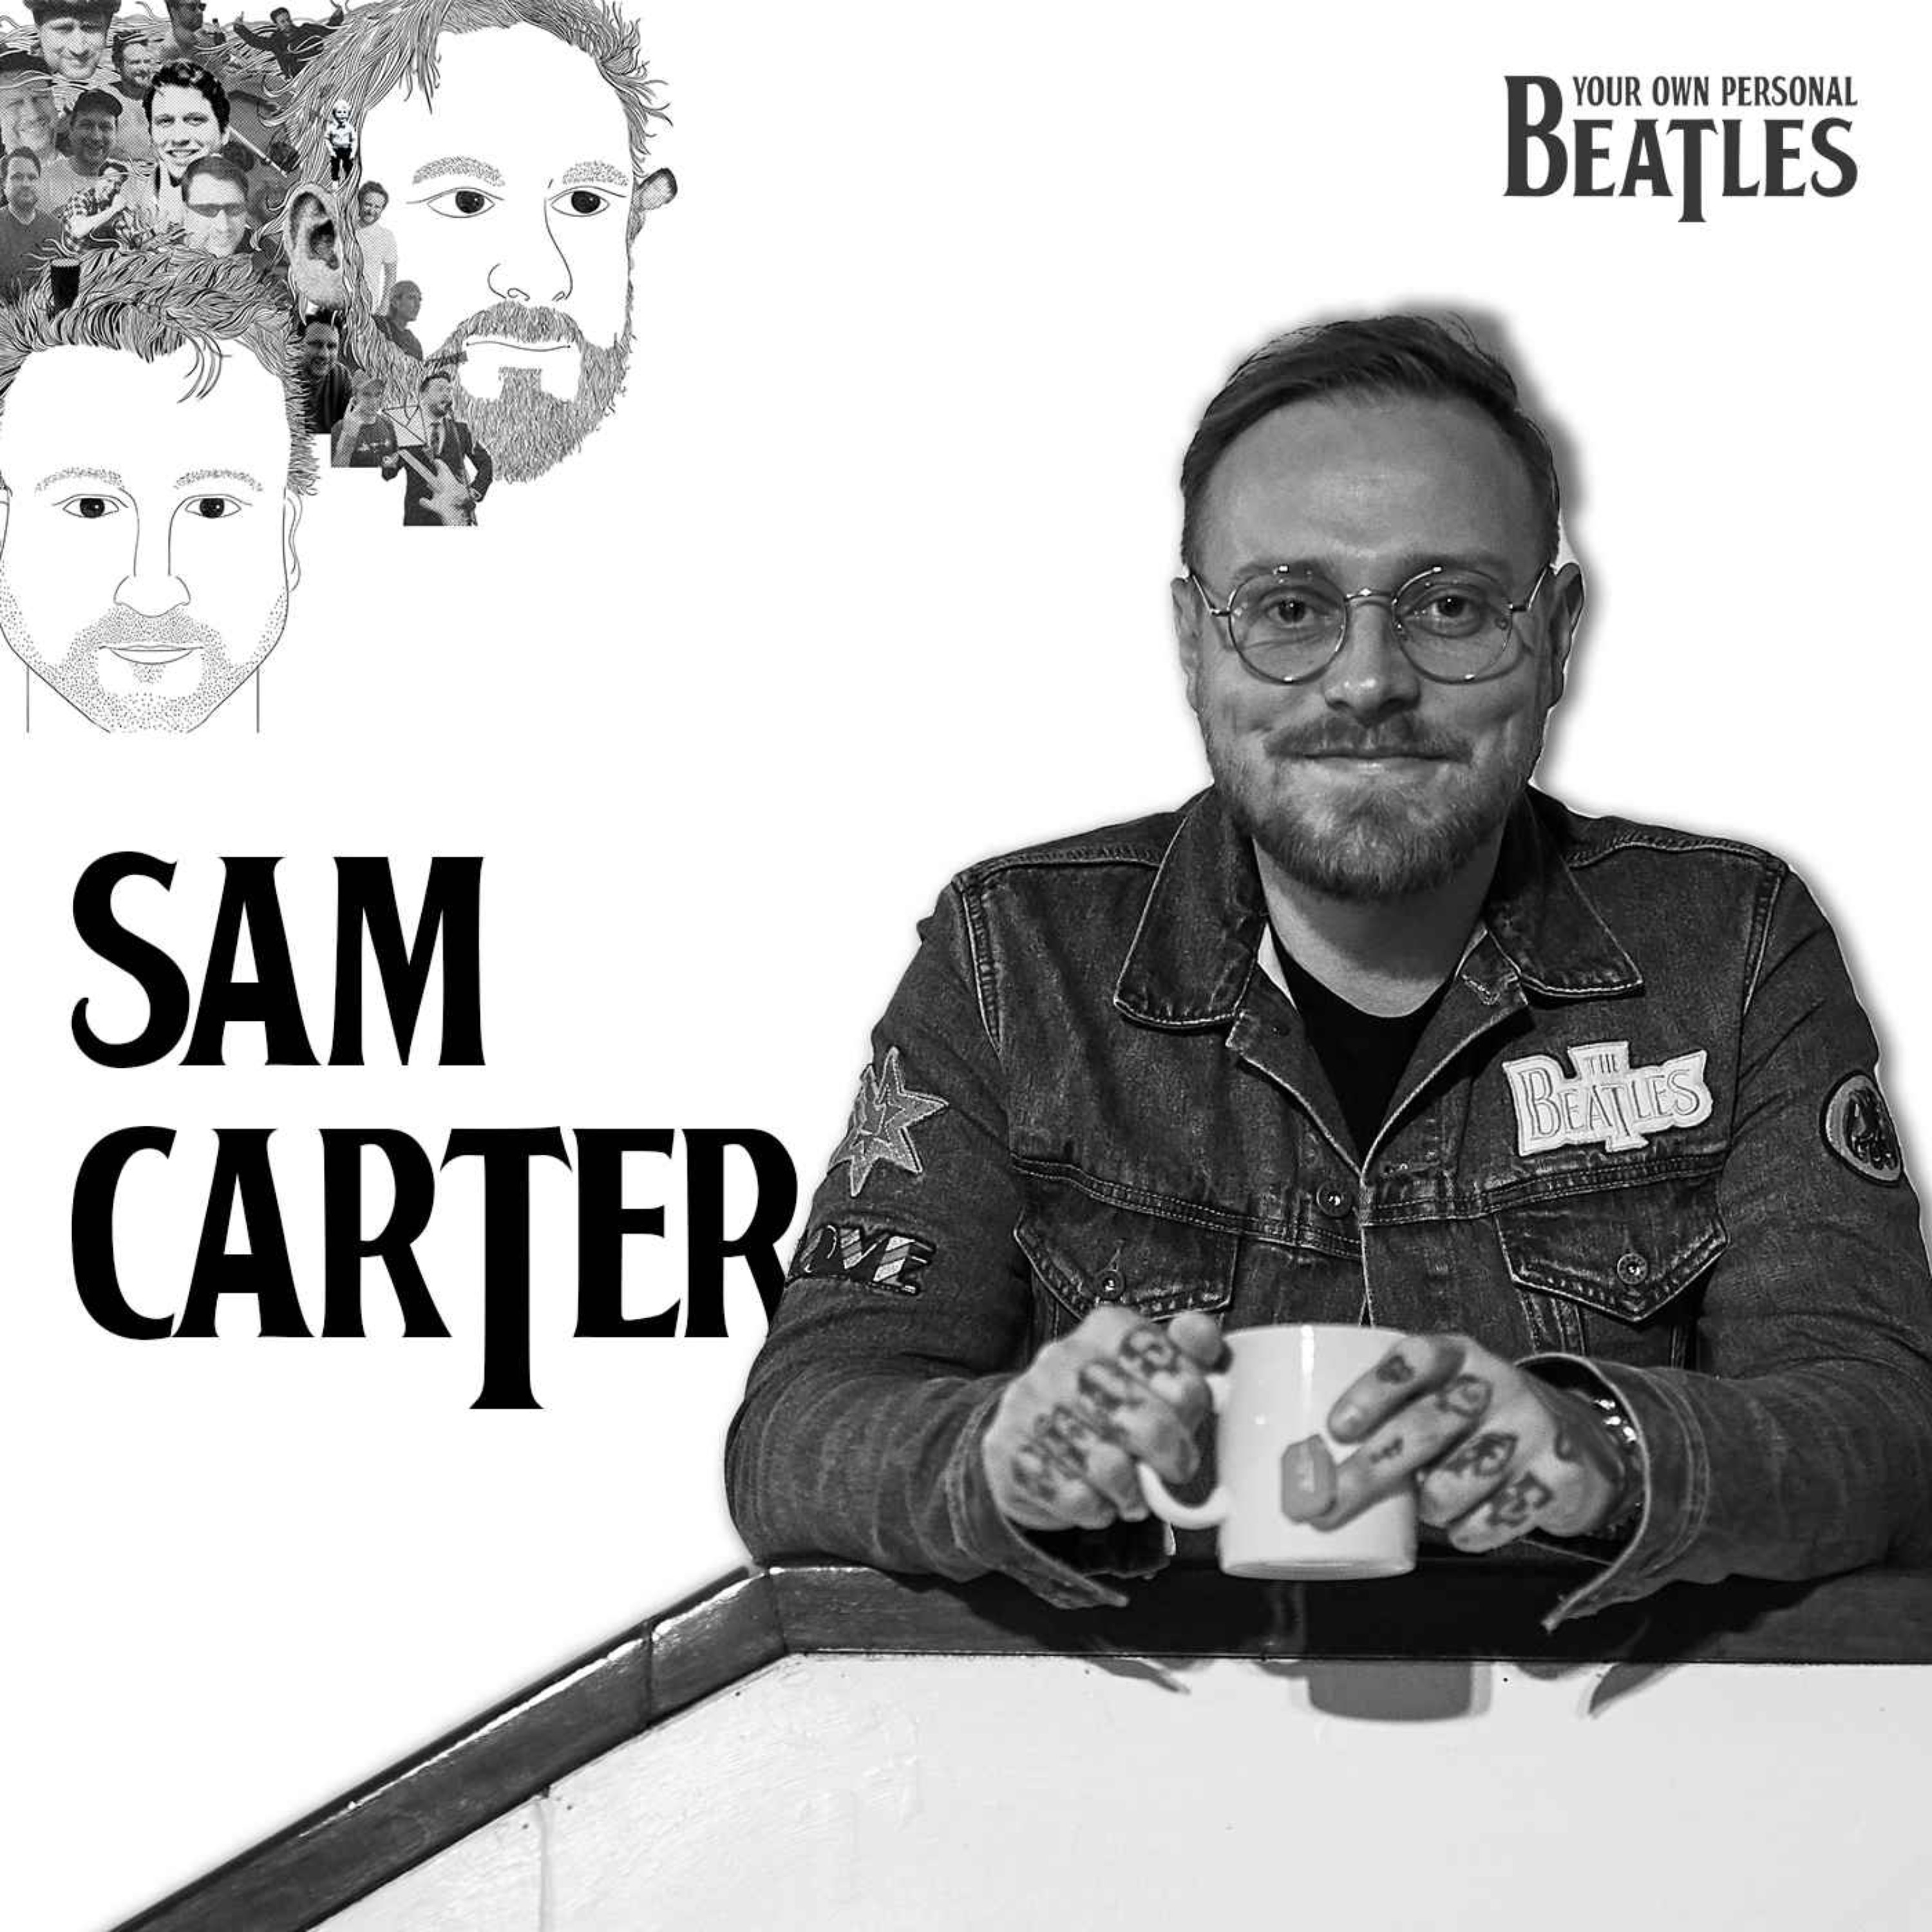 Sam Carter's Personal Beatles